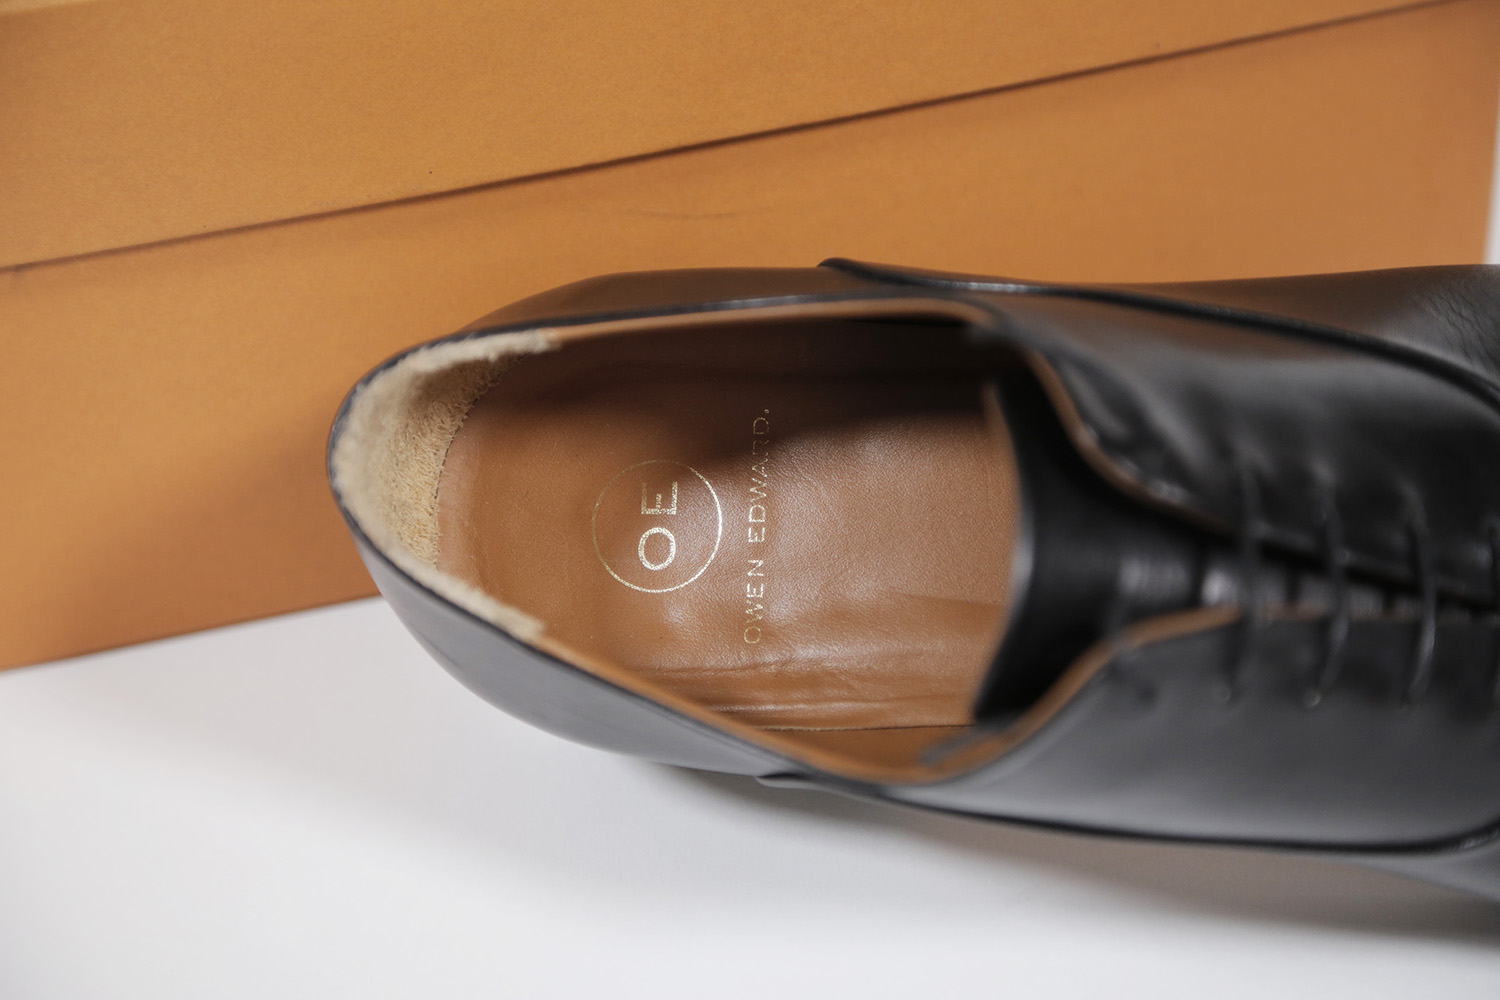 owen edward shoe review inside shoe